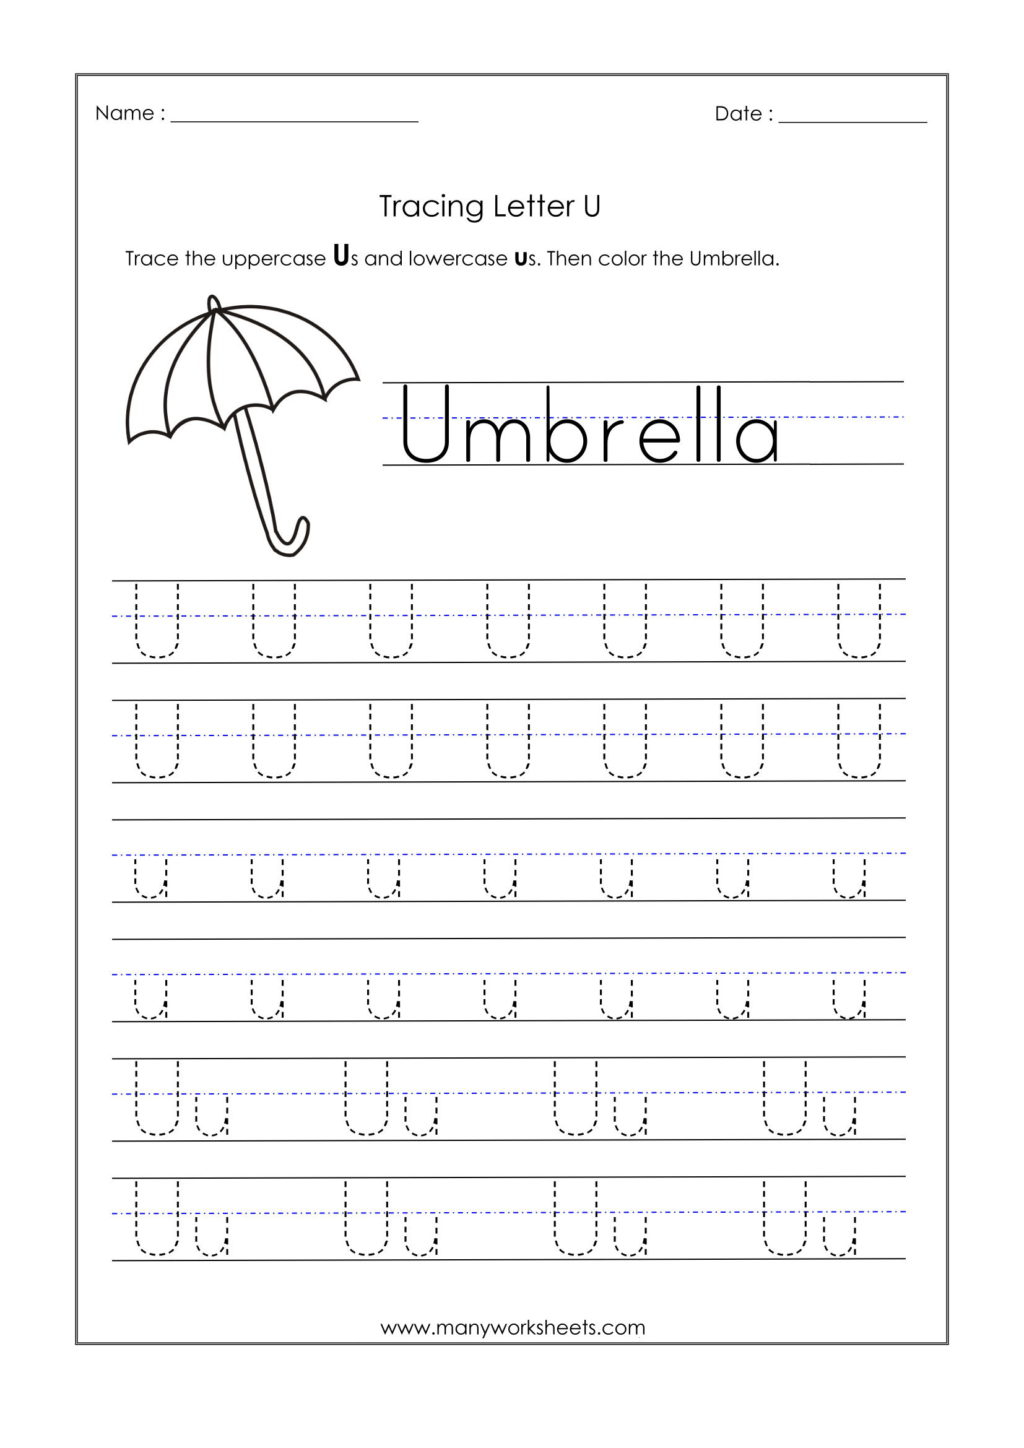 Worksheet ~ Letter U Worksheets For Kindergarten Trace for Letter U Tracing And Writing